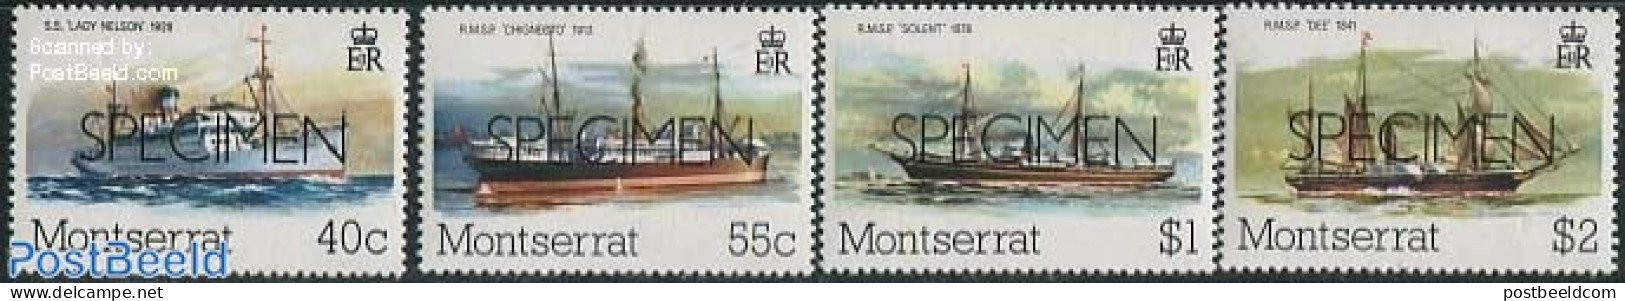 Montserrat 1980 Postal Ships 4v, SPECIMEN, Mint NH, Transport - Post - Ships And Boats - Post